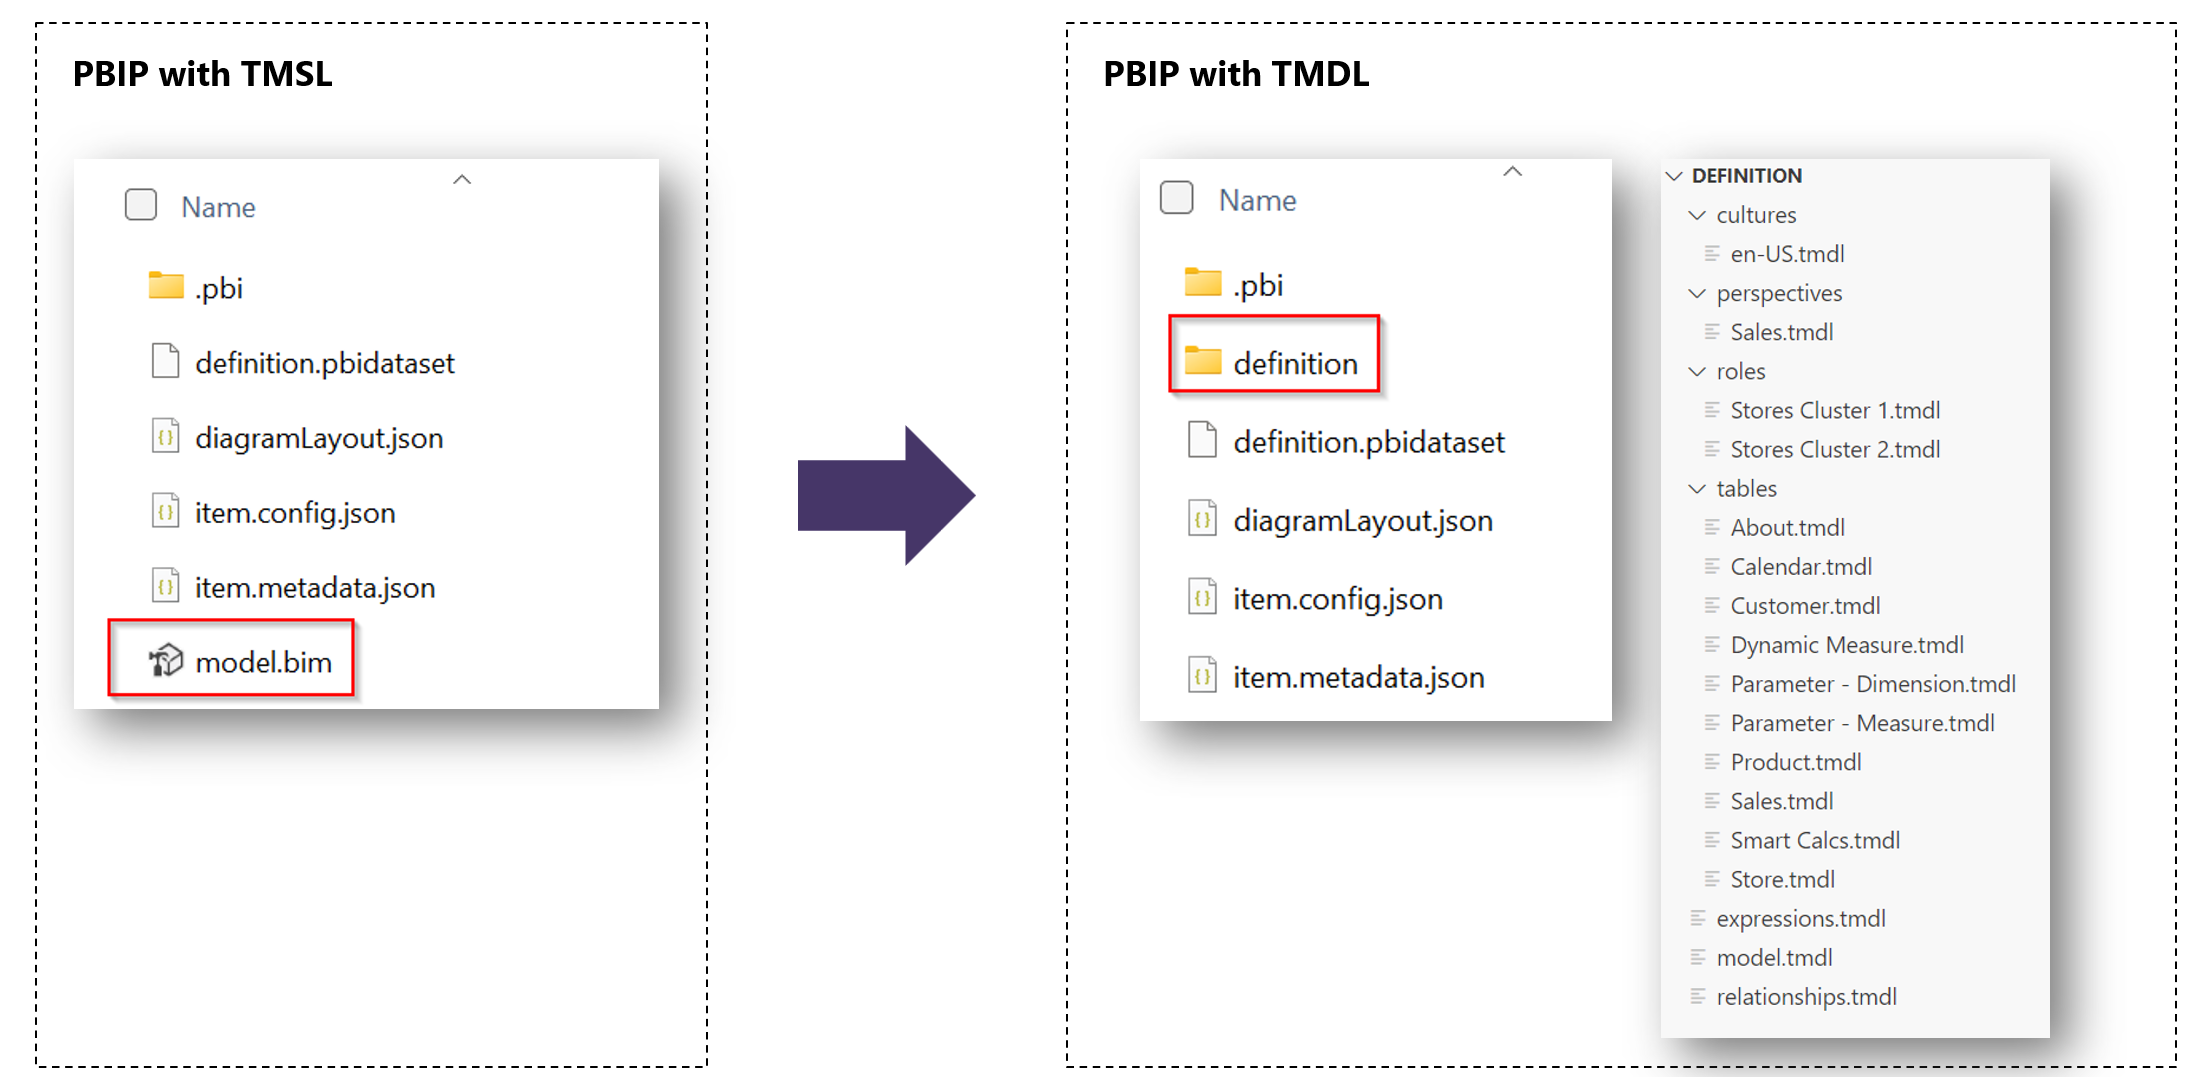 Zrzut ekranu przedstawiający projekty PBIP z folderami TMSL i folderami TMDL.